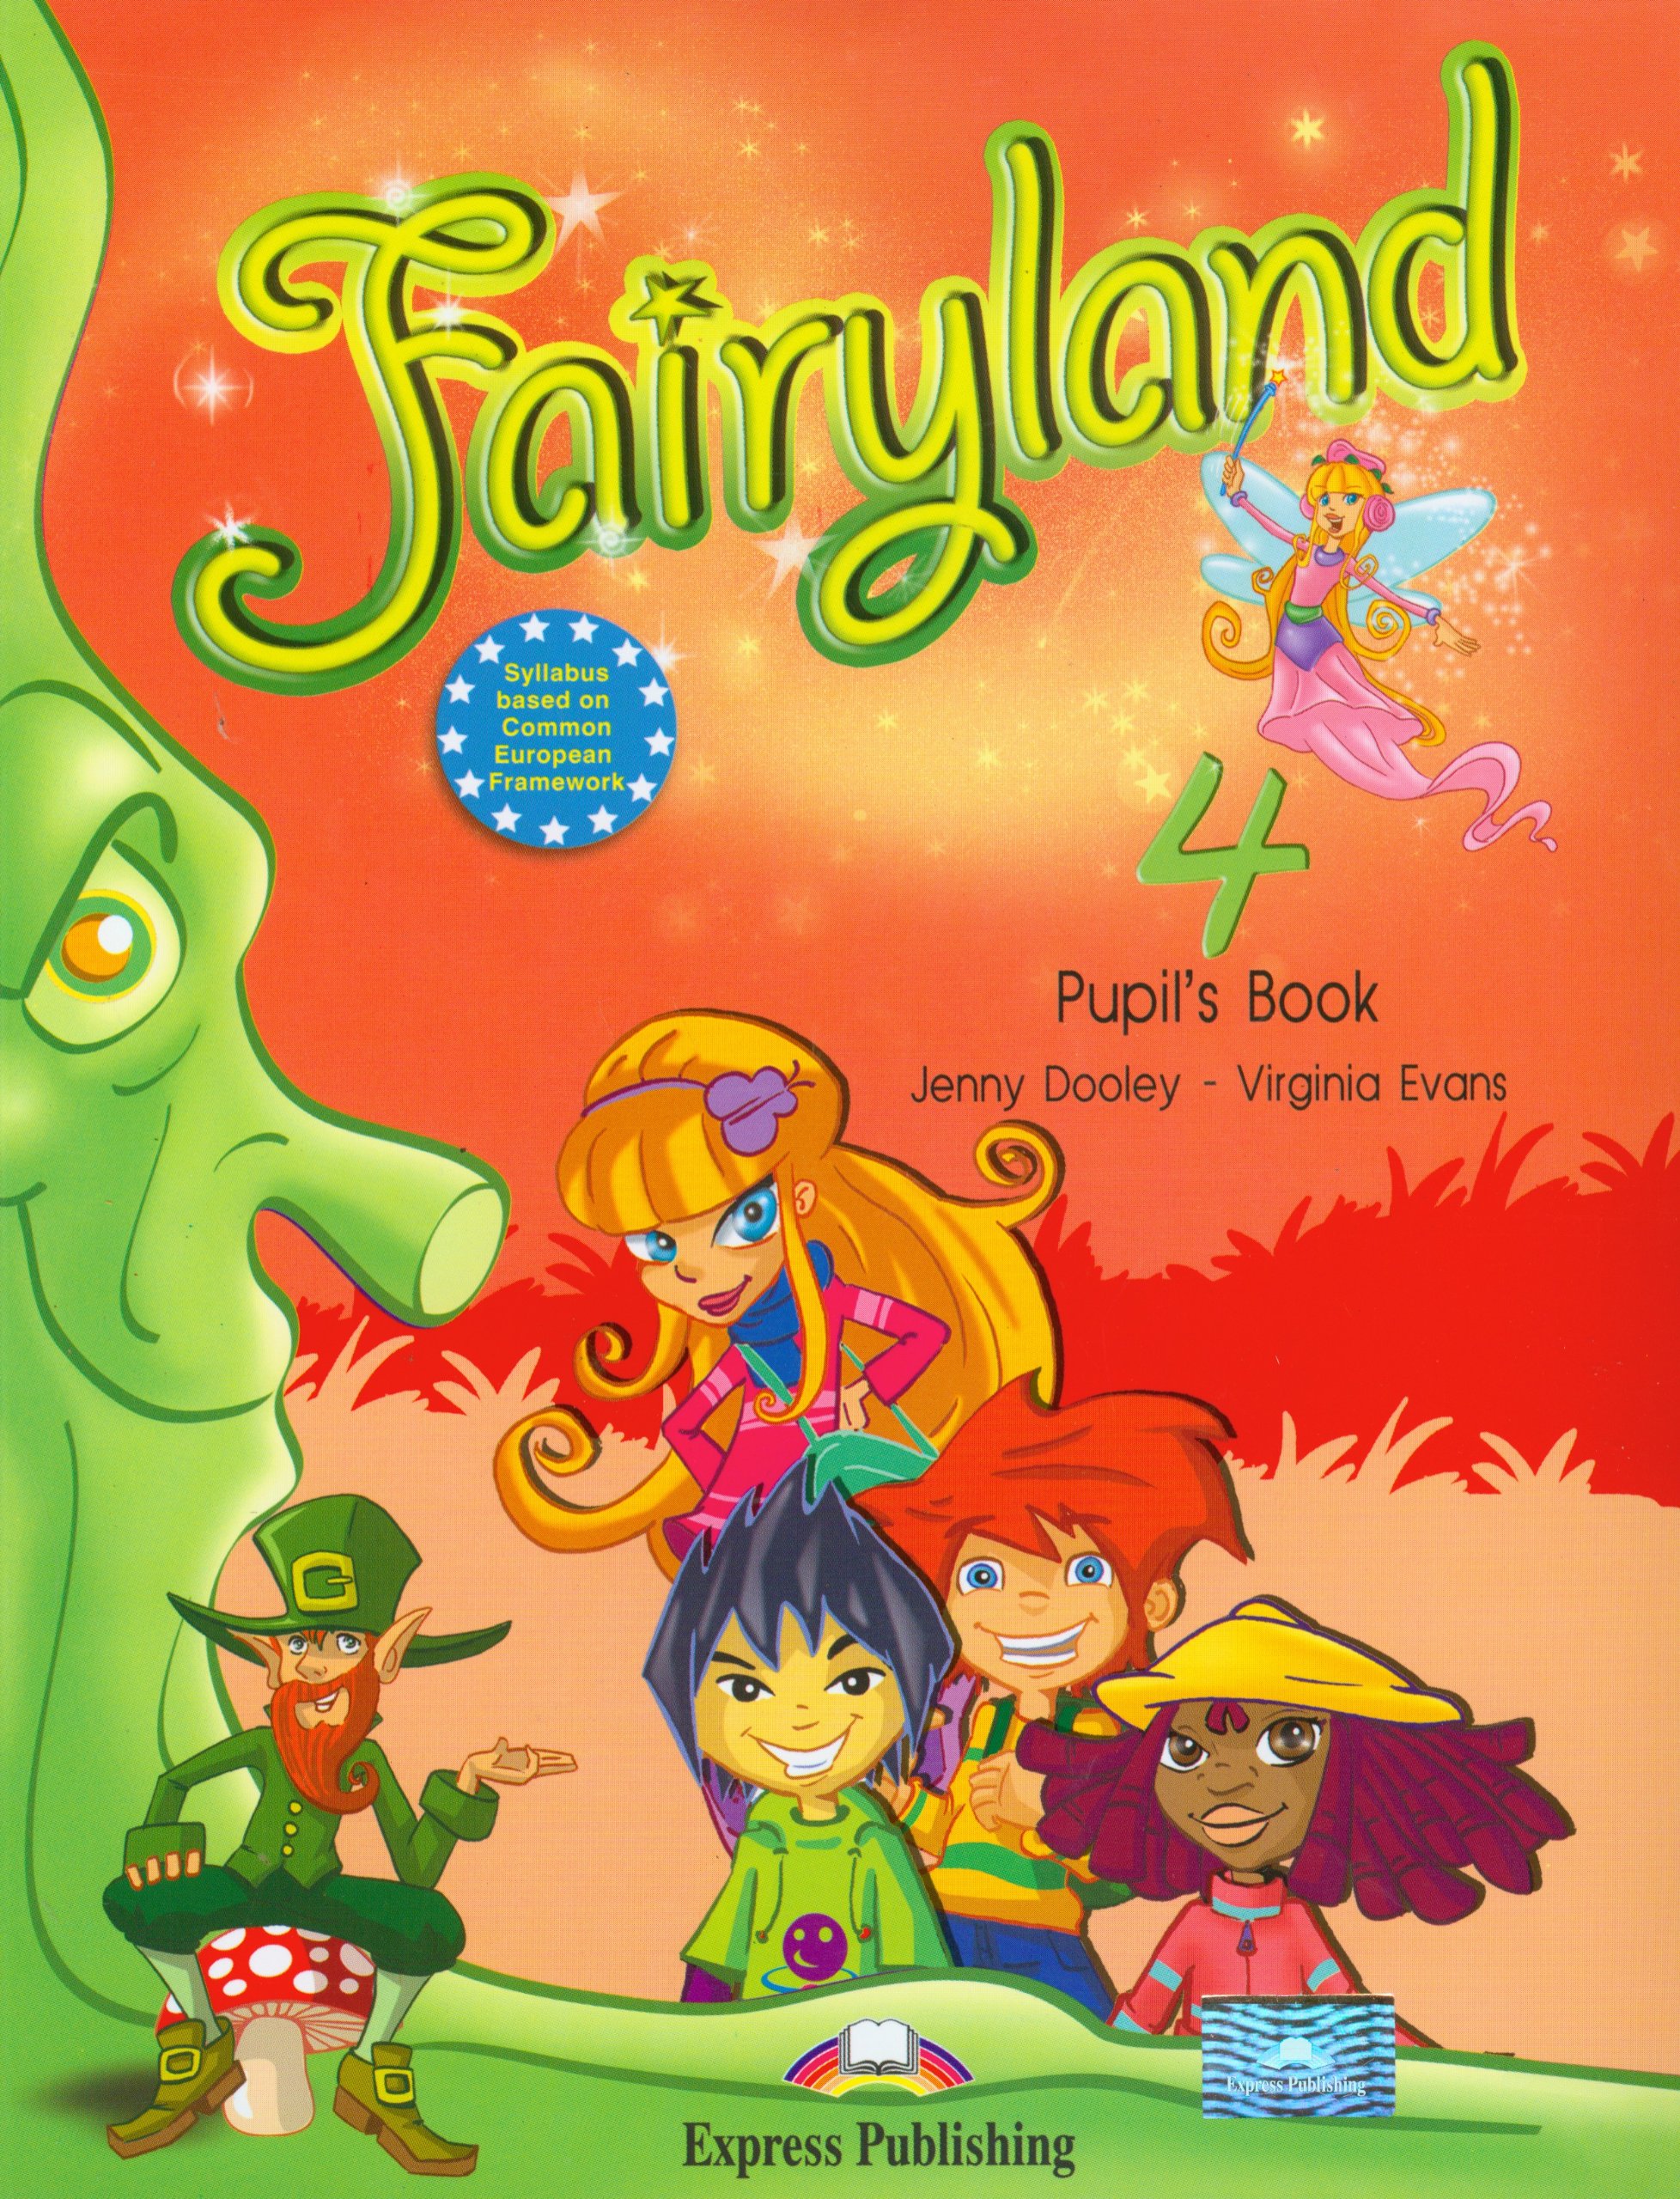 Coperta cărții: Fairyland 4 - lonnieyoungblood.com